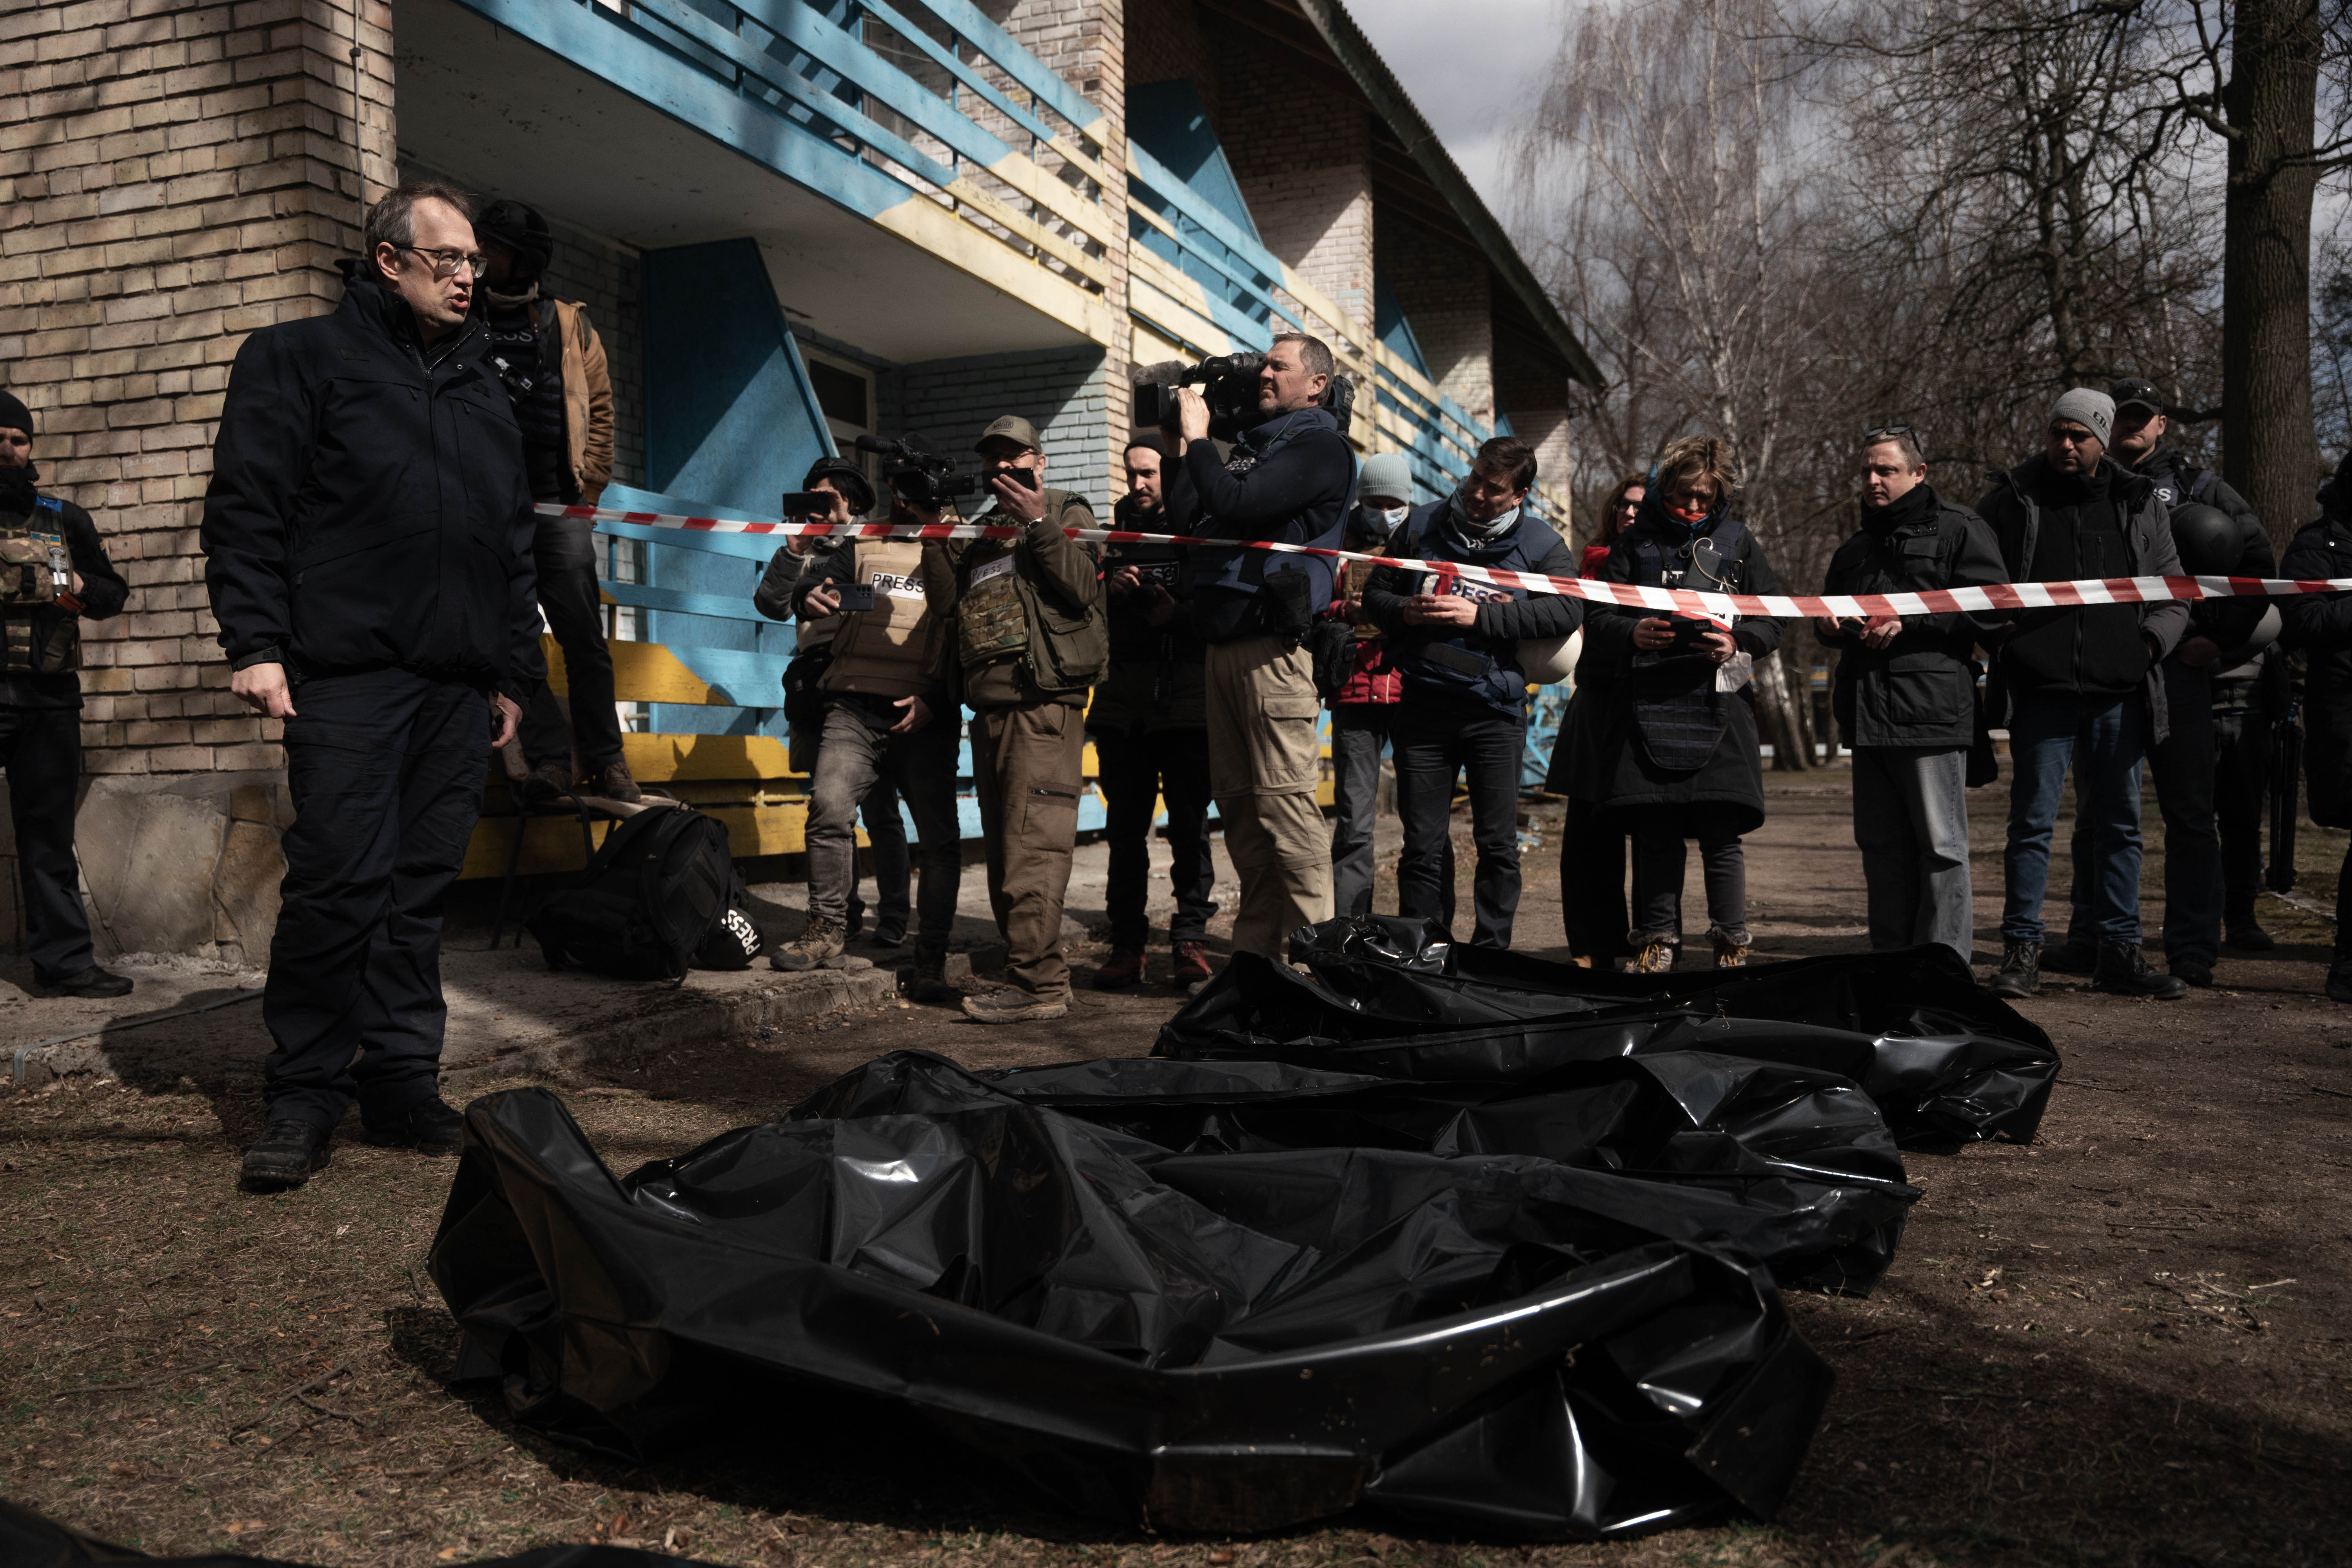 IMAGENES SENSIBLES - Infobae en Bucha - Centro de Tortura Ruso - Civiles ucranianos asesinados - Muertos - Guerra Ucrania - 04/04/22